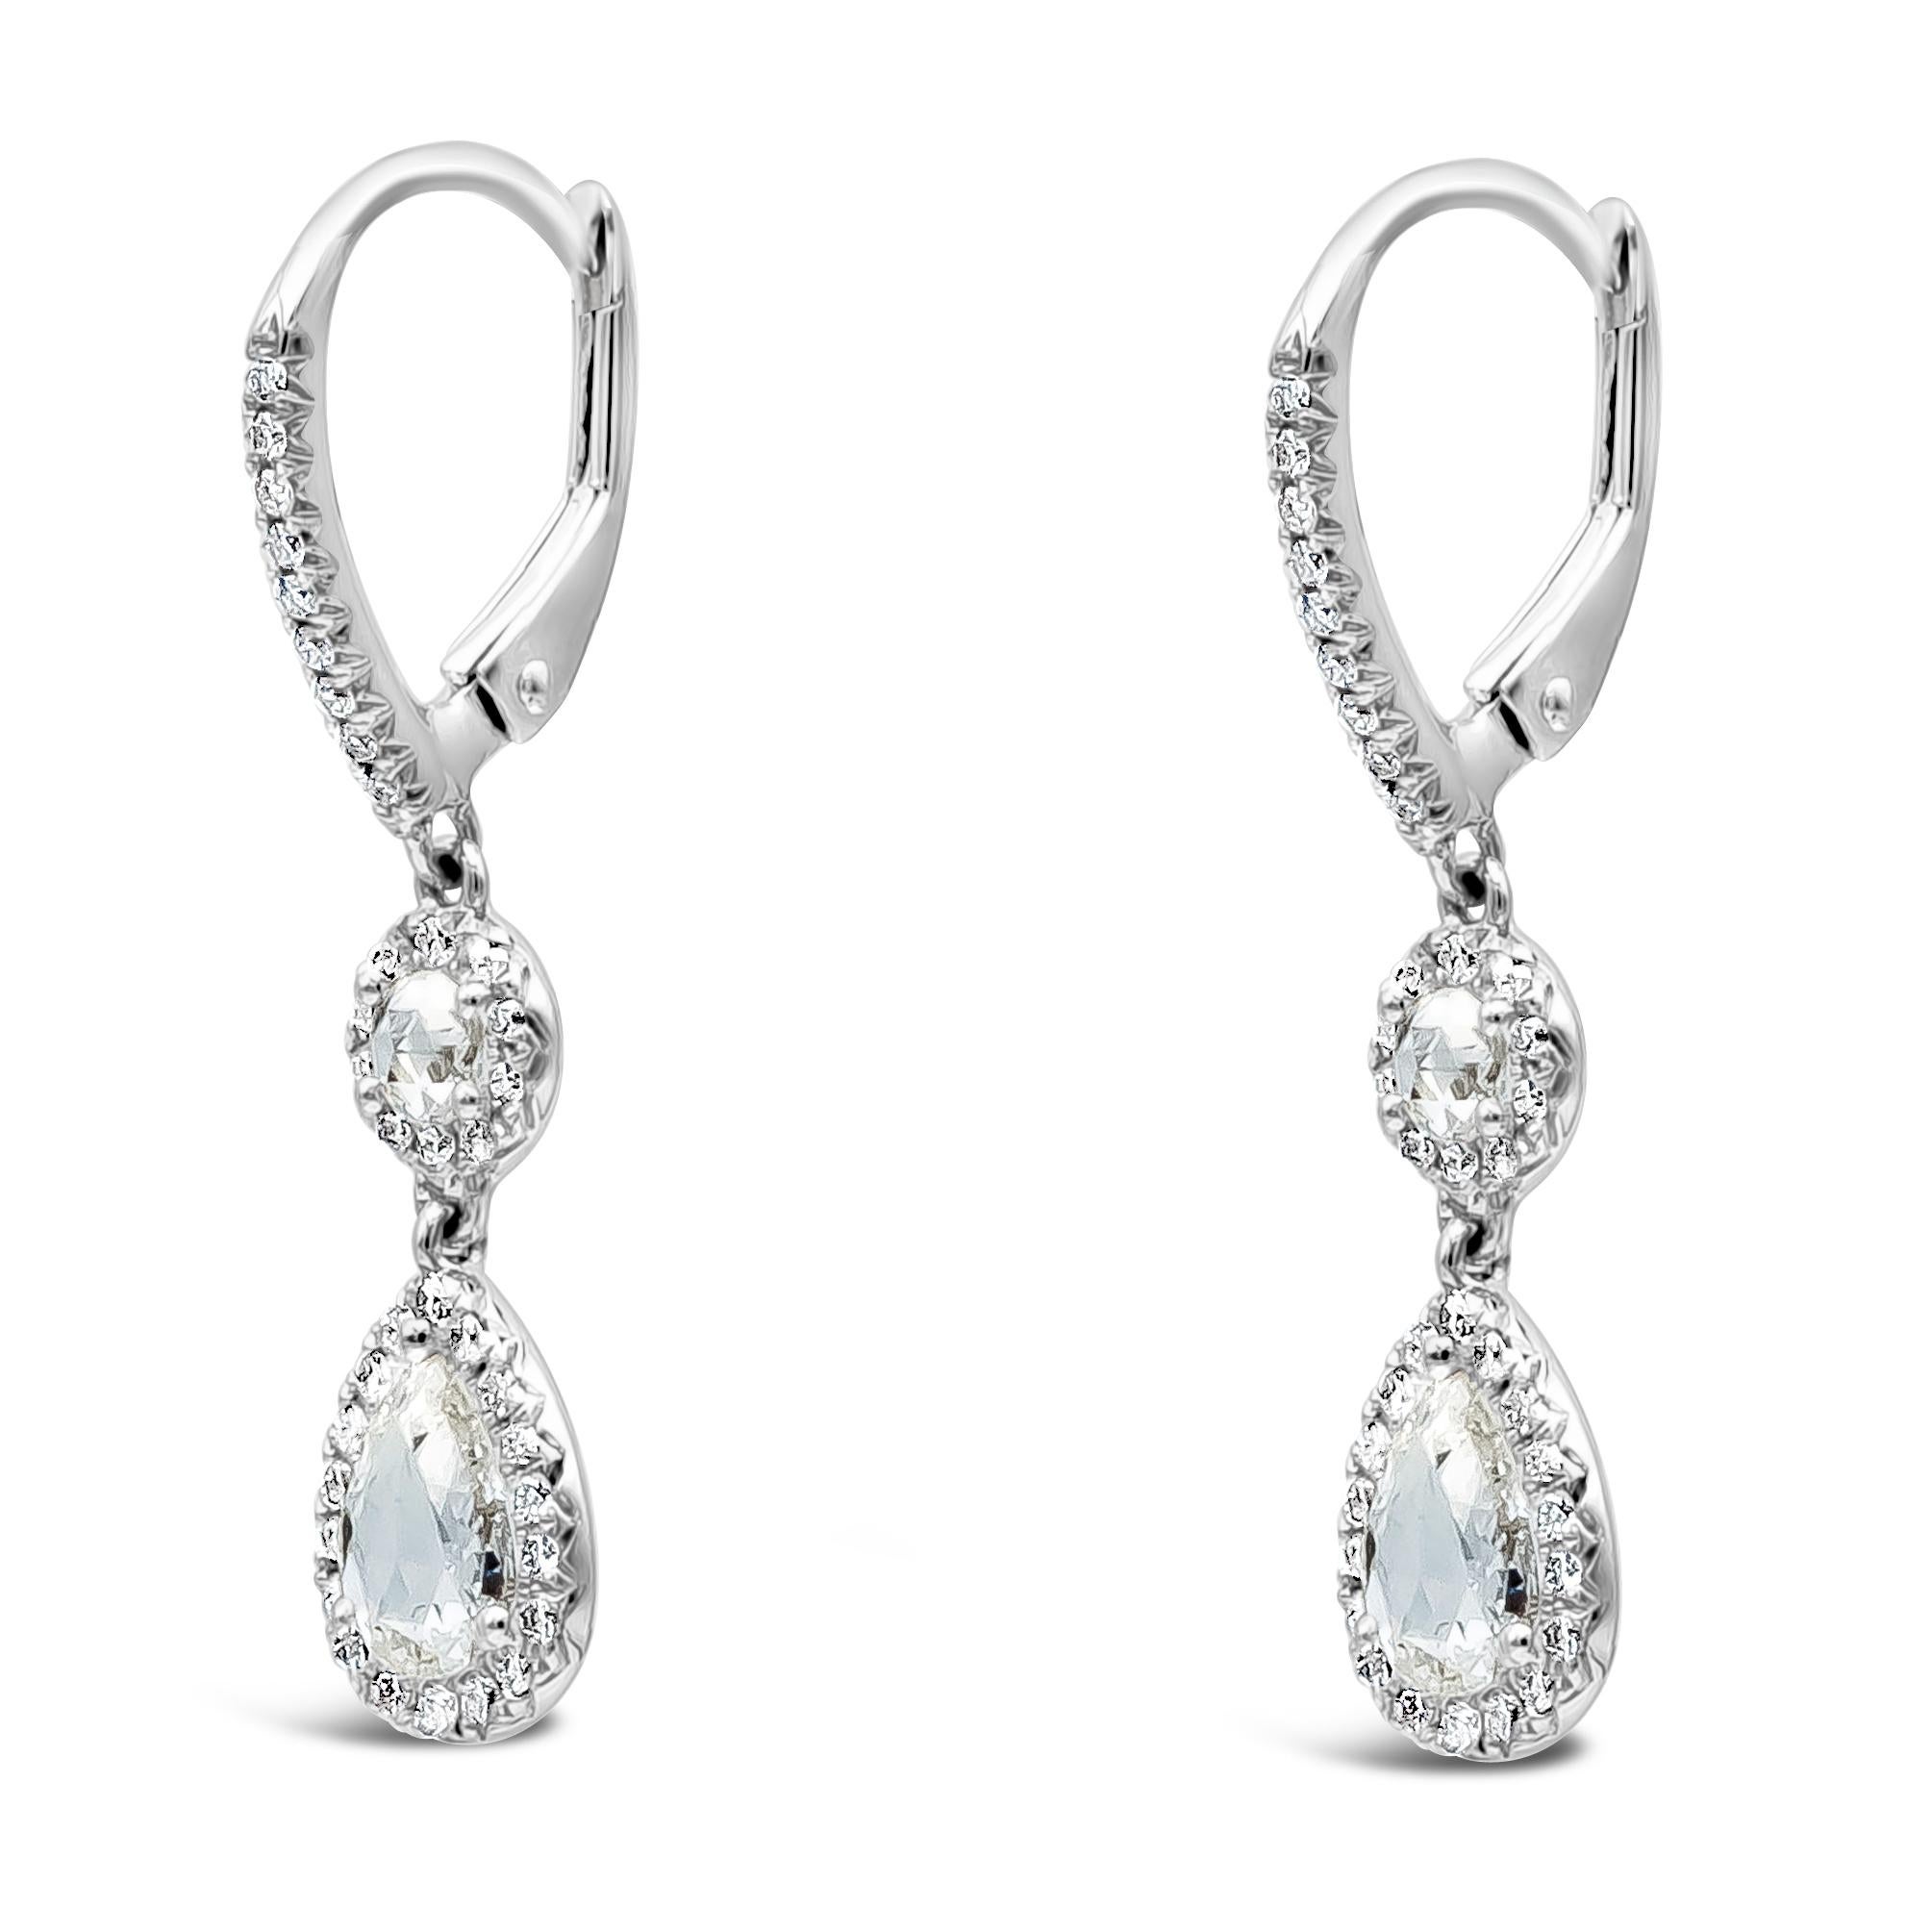 Cette magnifique paire de boucles d'oreilles pendantes est ornée d'un diamant poire et d'un diamant rond pesant au total 1,10 carats. Le tout est serti dans un halo. Il est suspendu à un levier incrusté de diamants. Fabriqué en or blanc 18K.

Roman